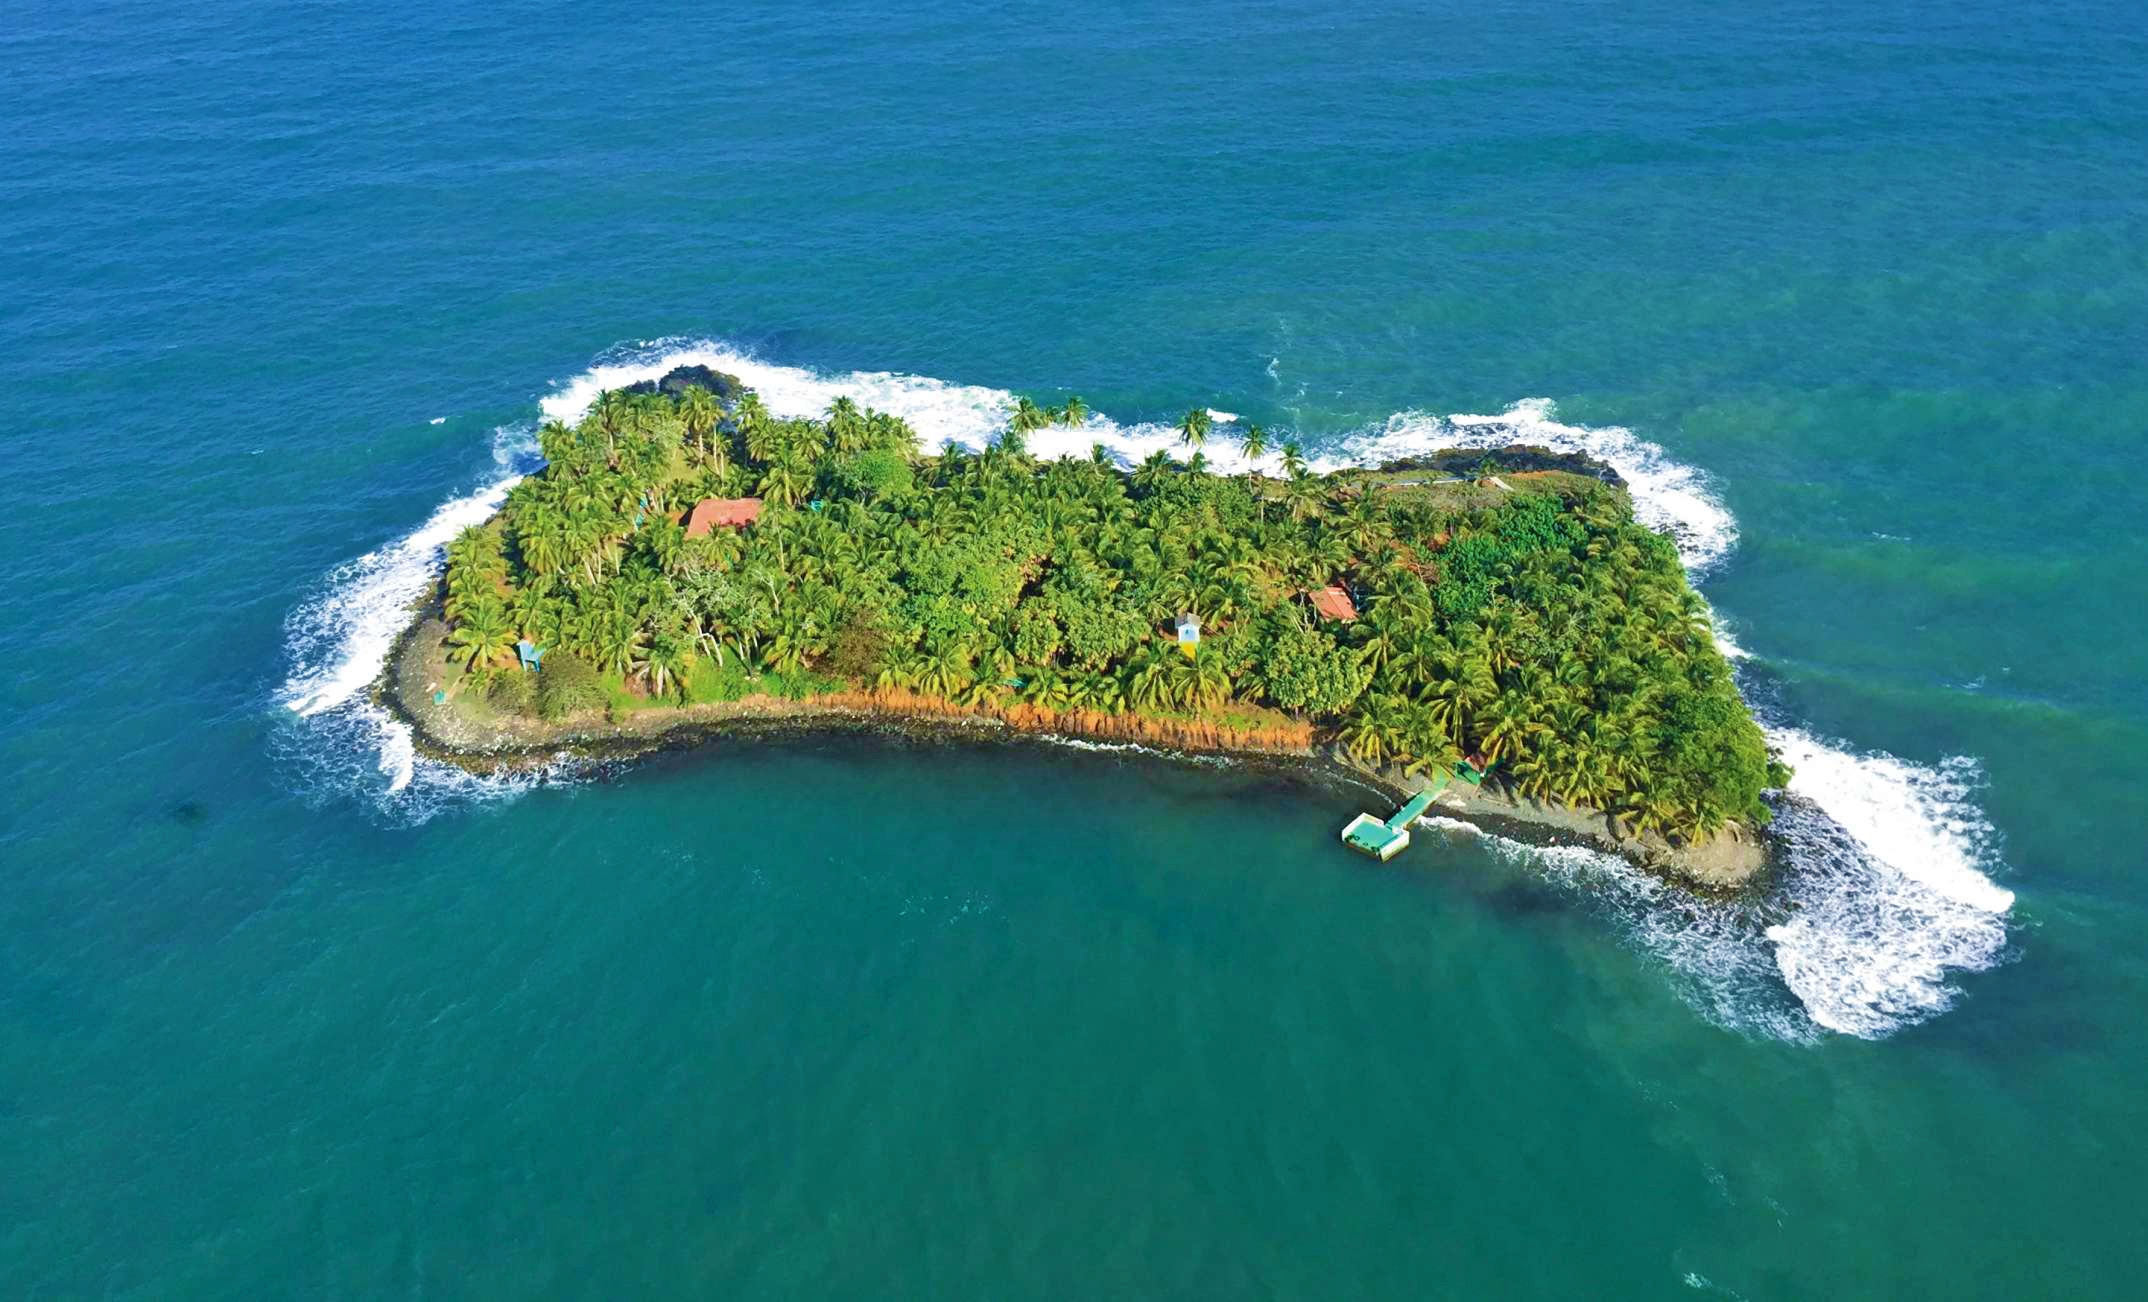 Oferta ilegal y fraudulenta de venta de la Isla iguana en el Mar Caribe Nicaragüense